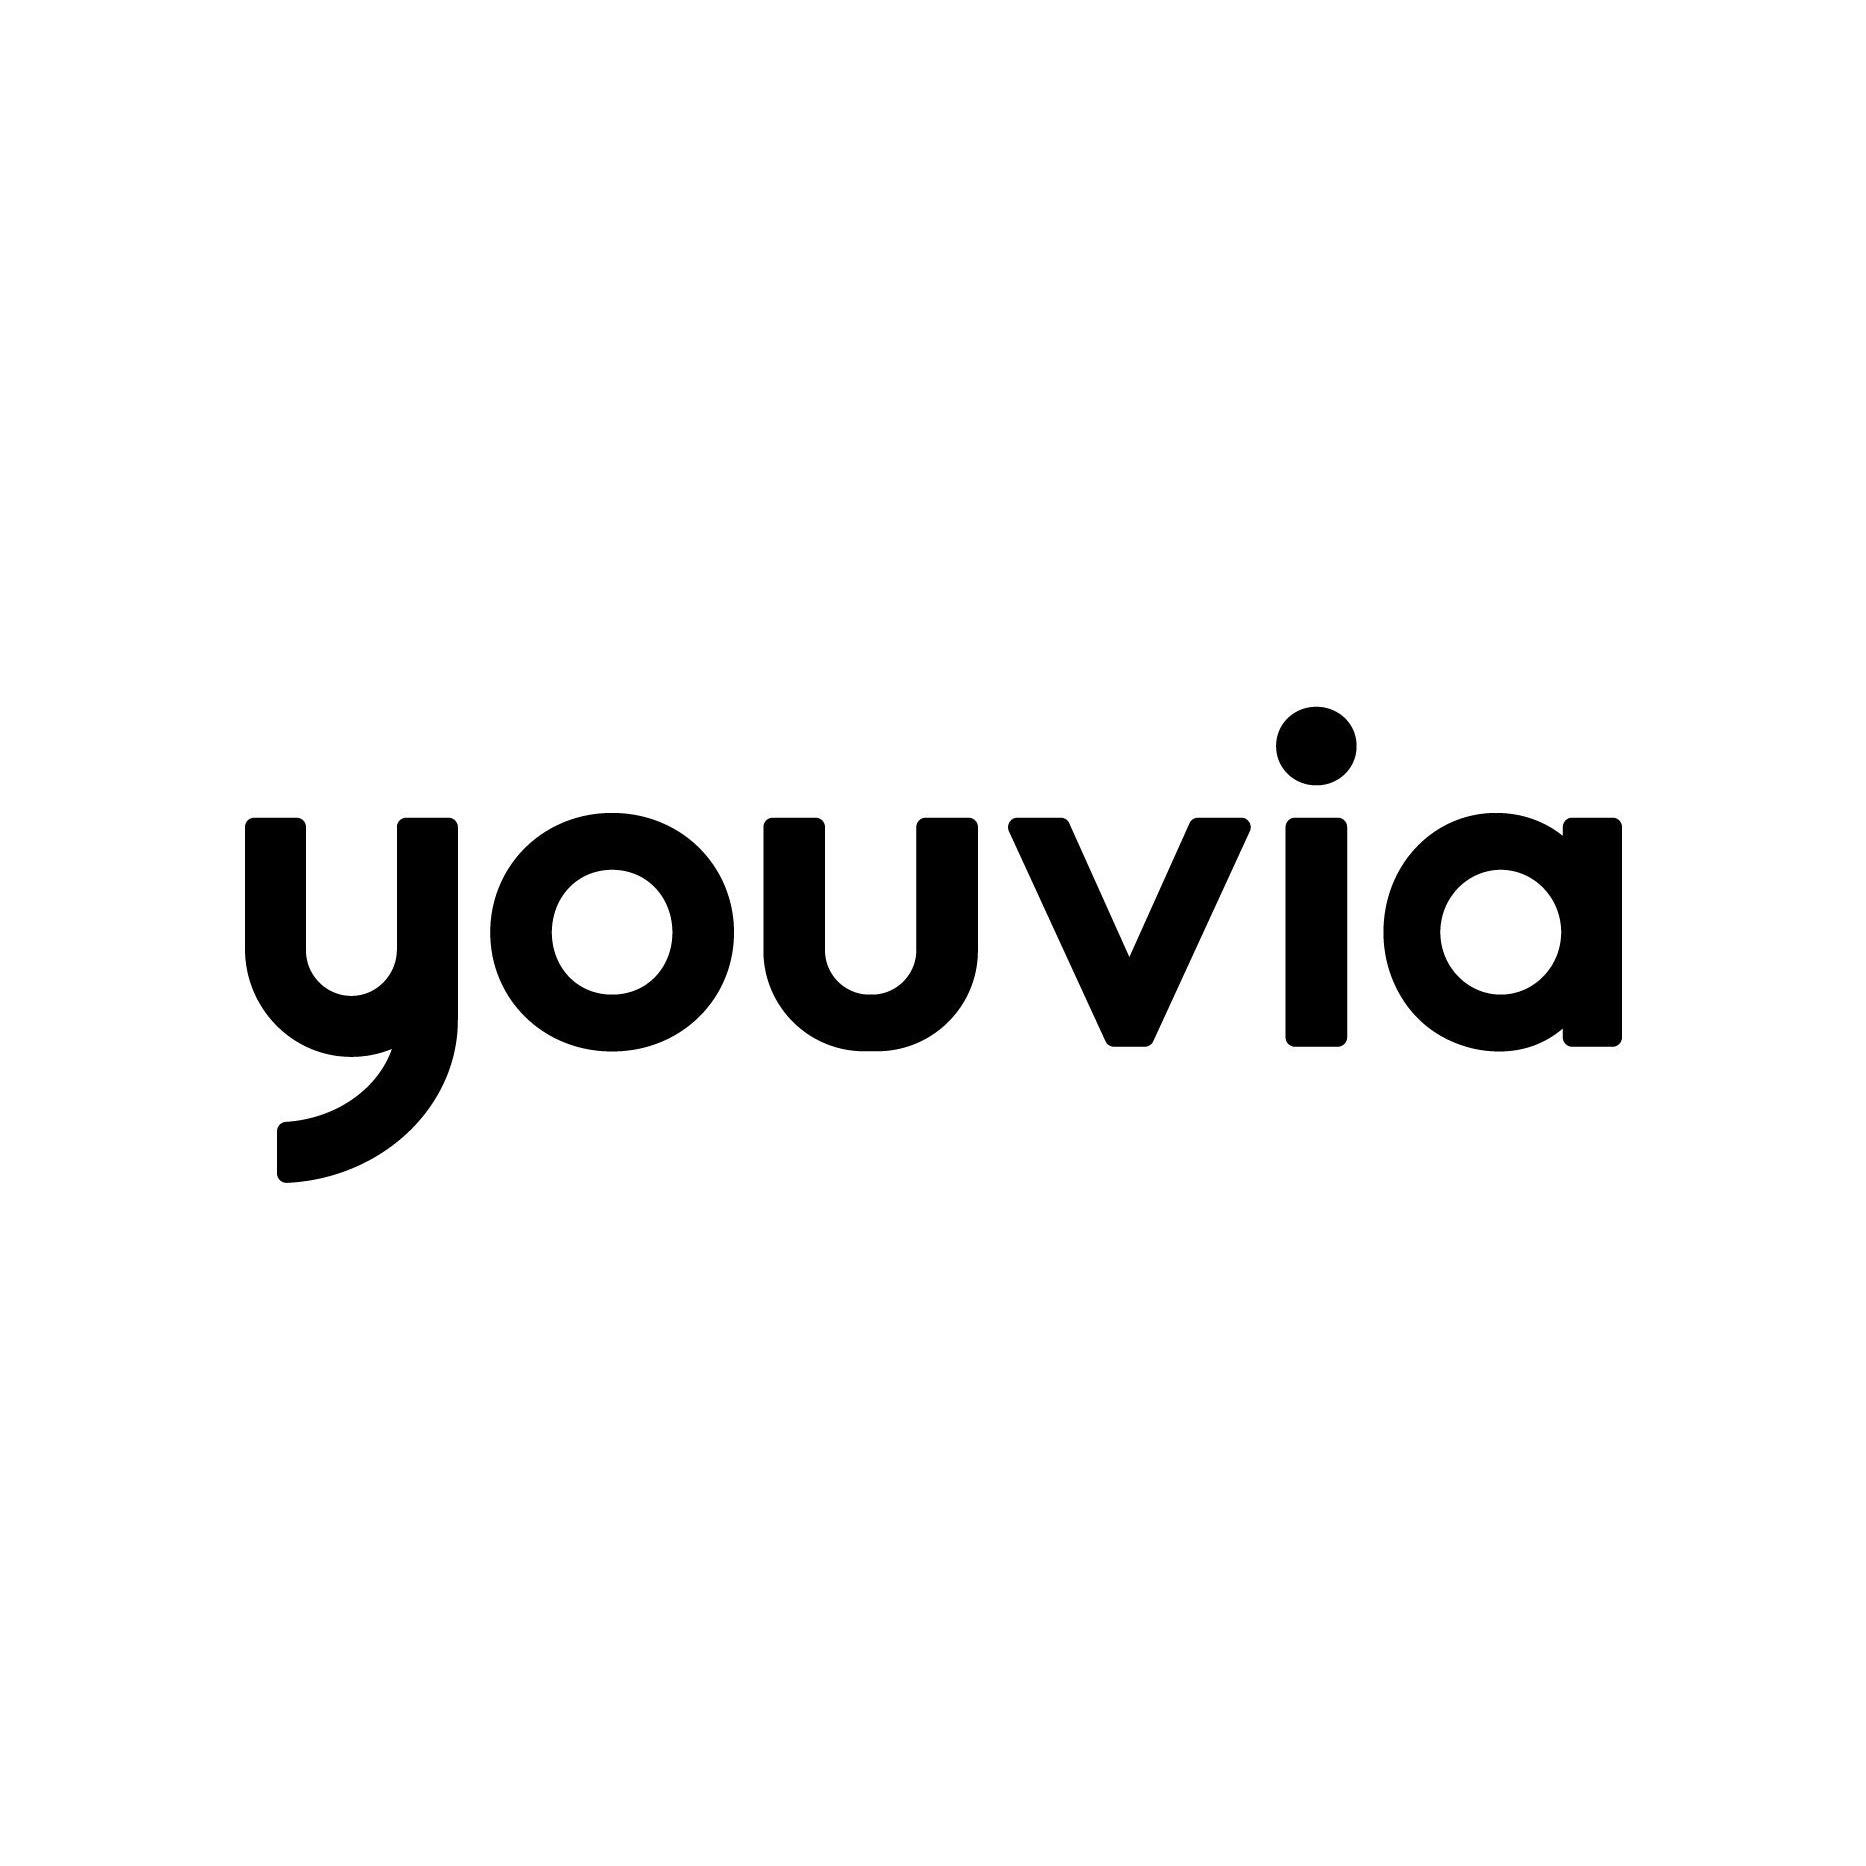 Youvia Logo